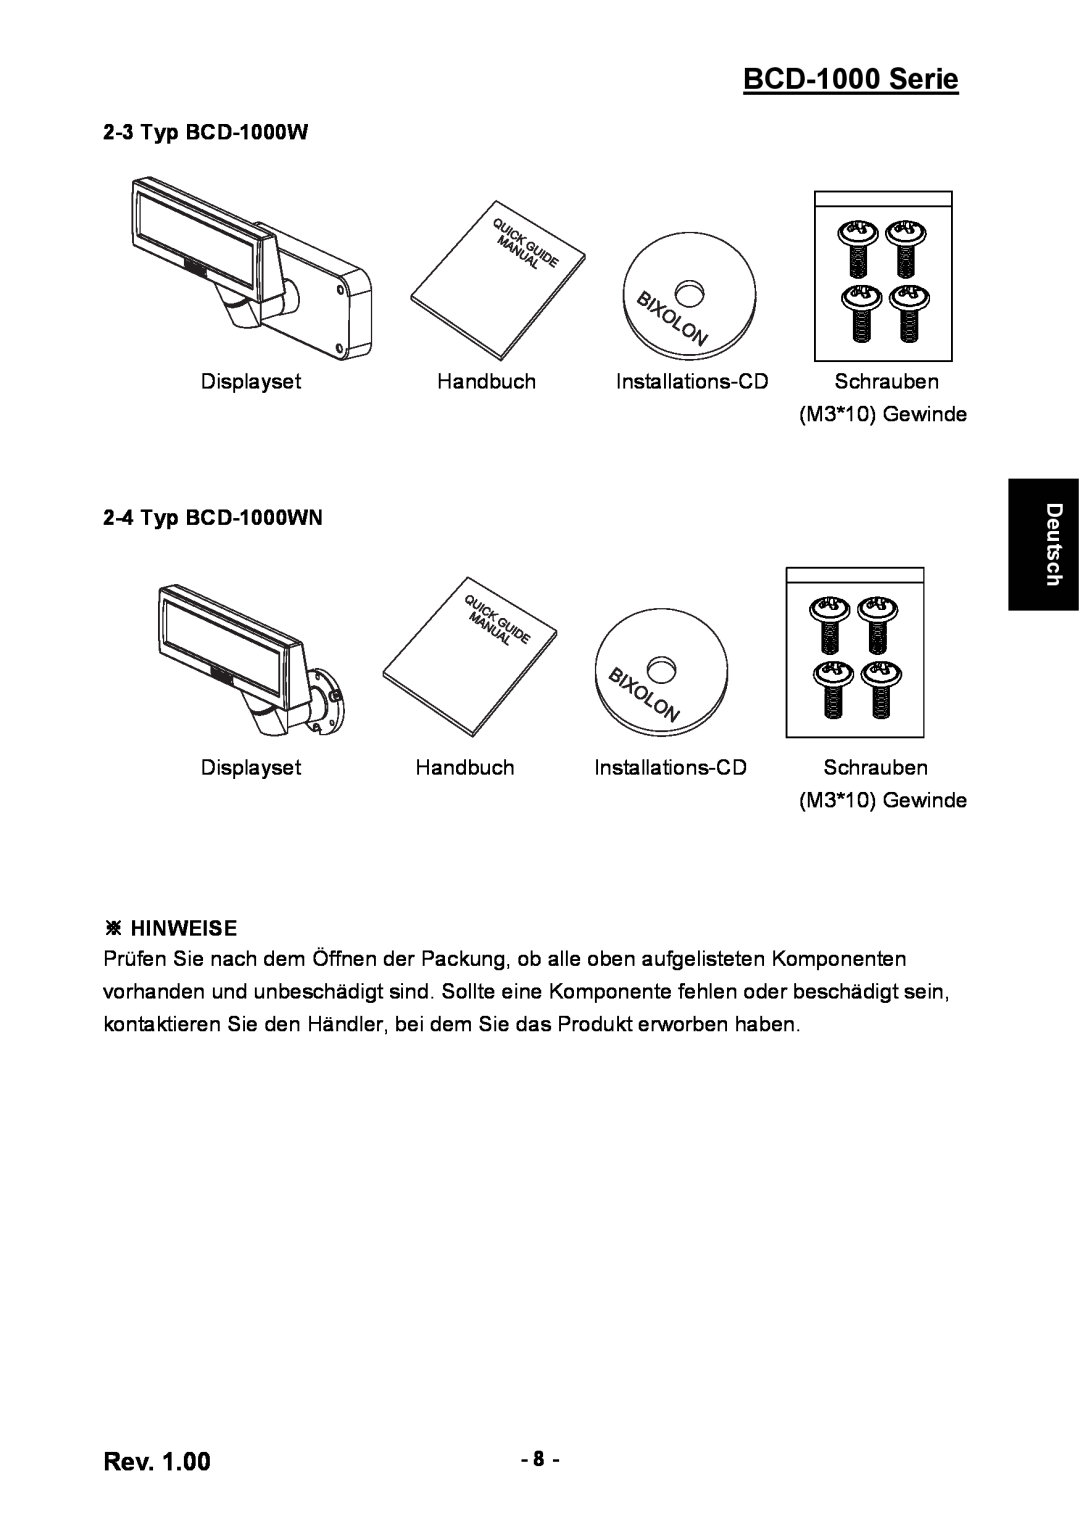 Samsung user manual Typ BCD-1000WN, ※ Hinweise, BCD-1000 Serie, Deutsch 